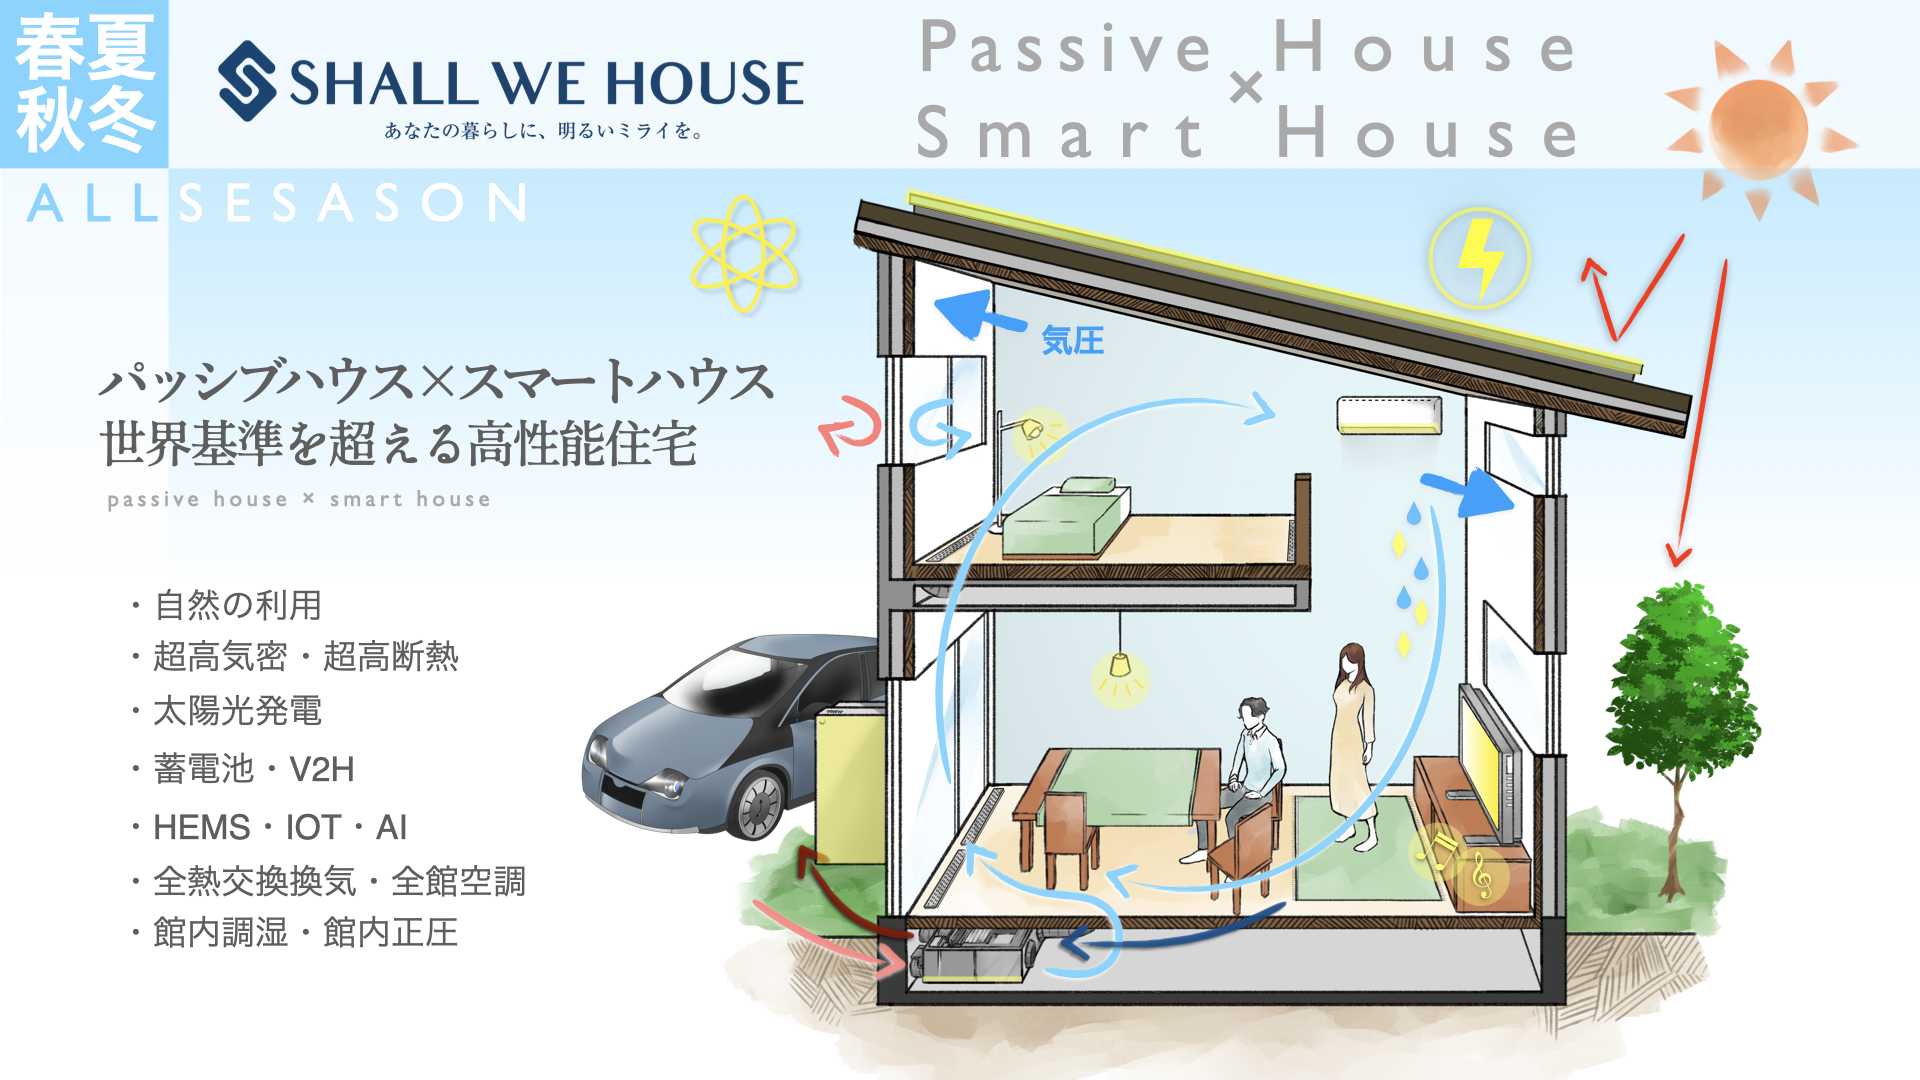 パッシブハウス×スマートハウス
世界基準を超える高性能住宅